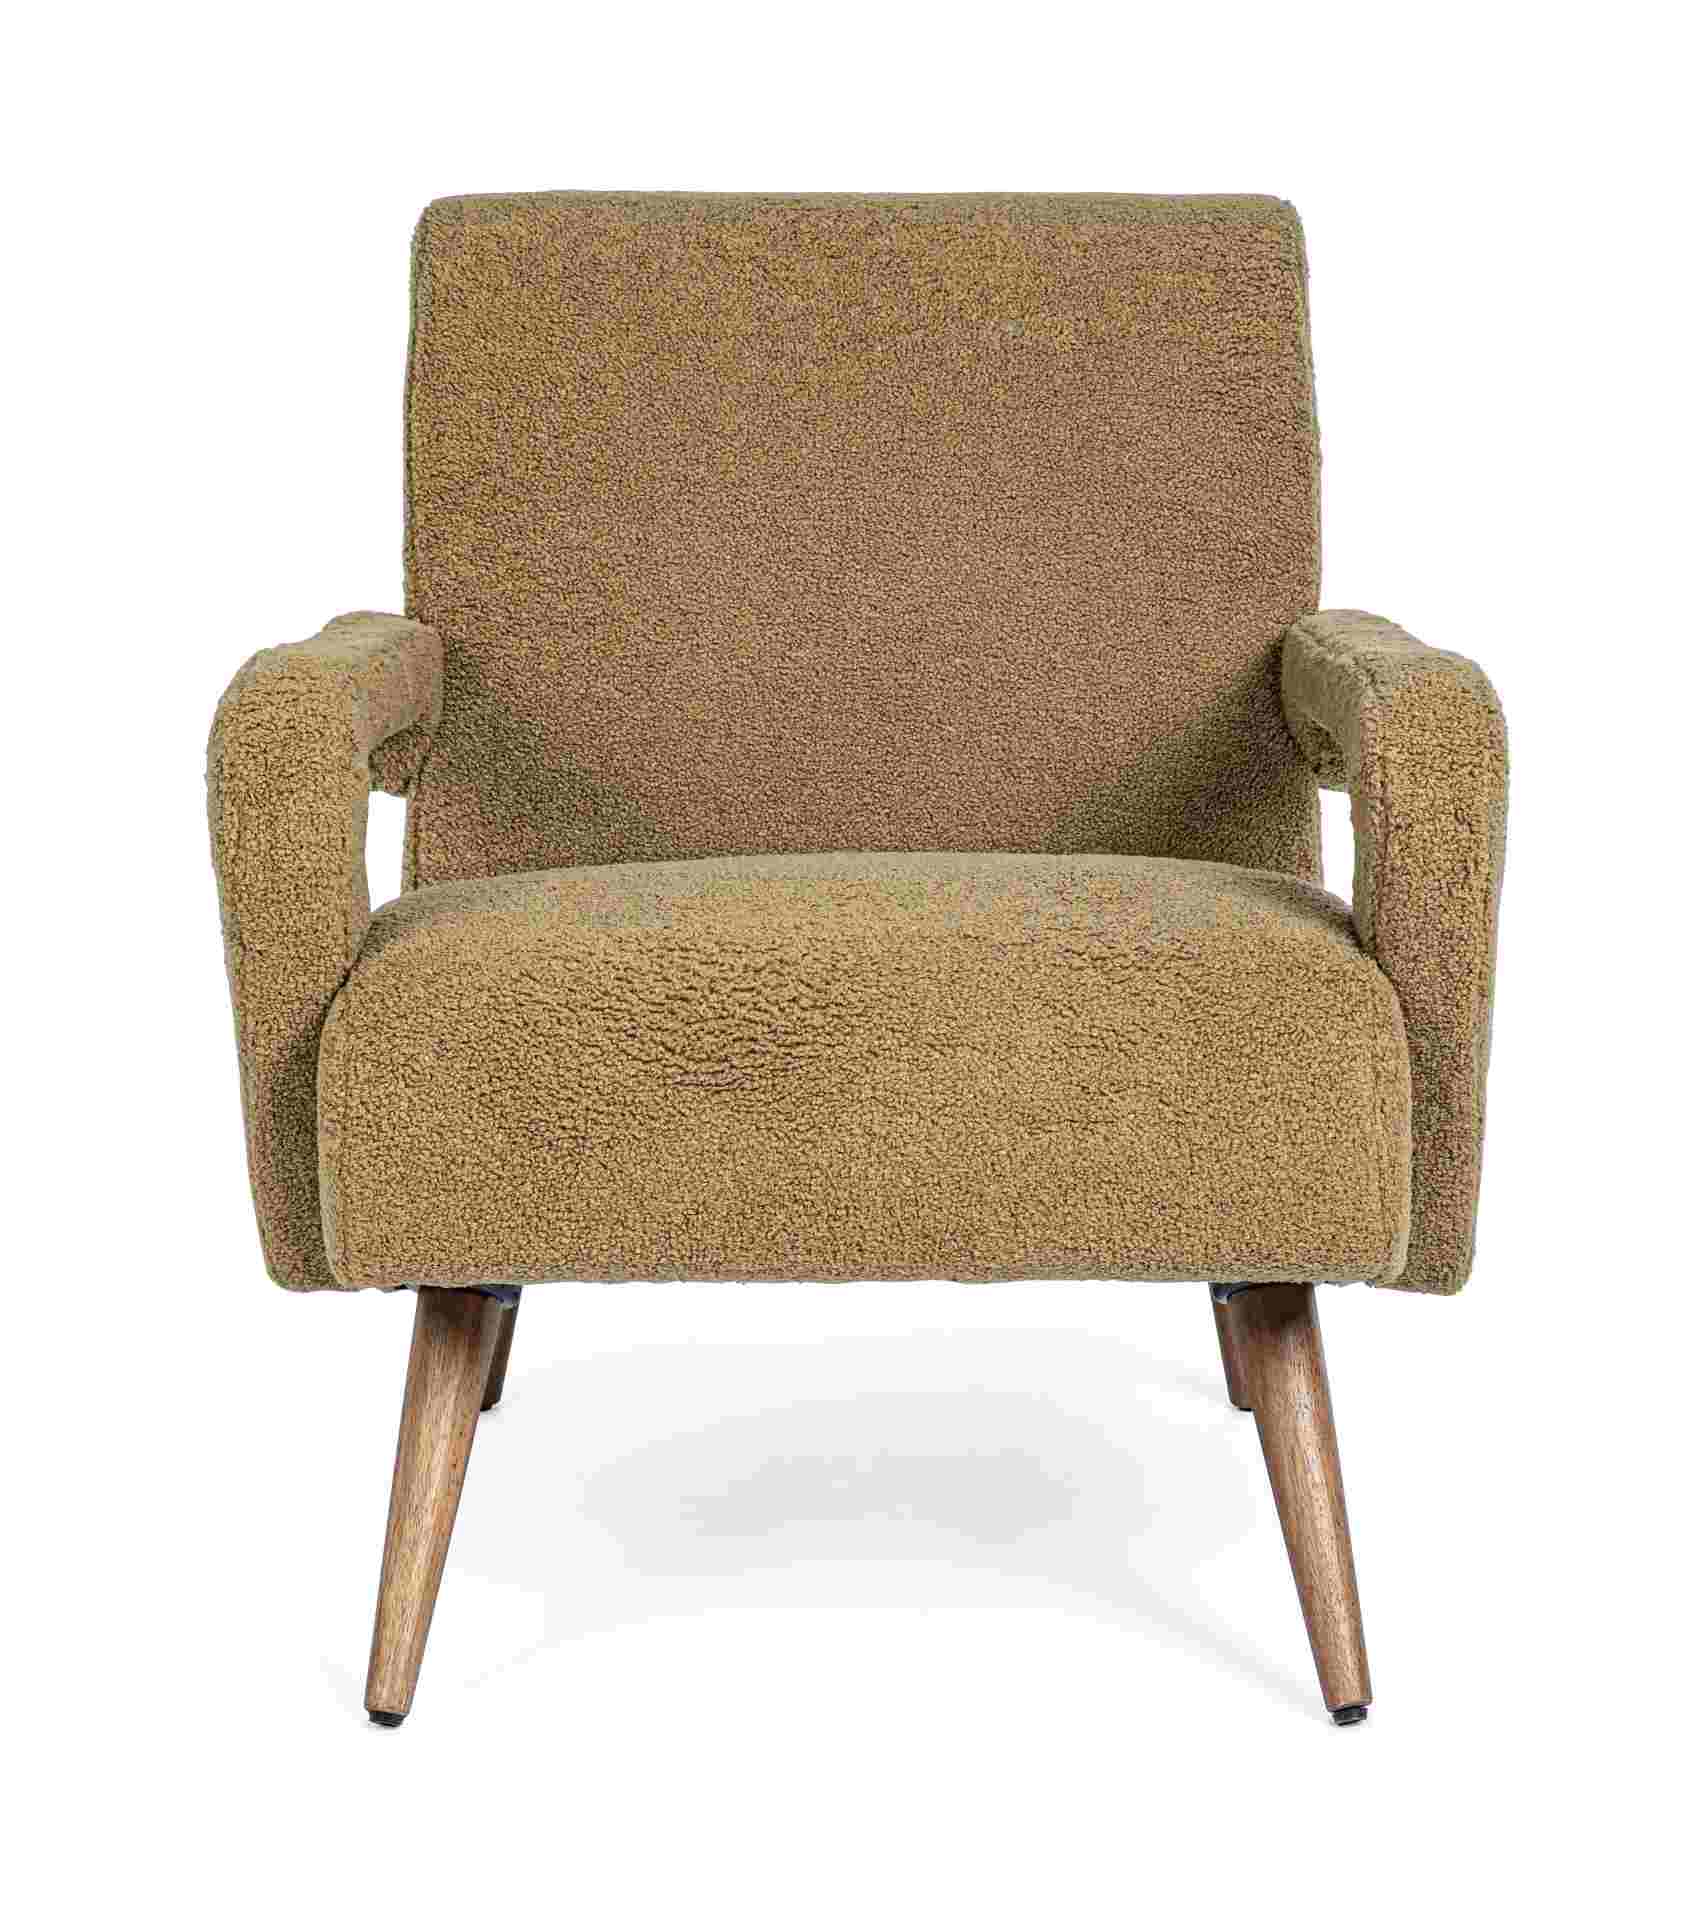 Der Sessel Berna überzeugt mit seinem modernen Design. Gefertigt wurde er aus Stoff in Teddy-Optik, welcher einen braunen Farbton besitzt. Das Gestell ist aus Kautschukholz und hat eine natürliche Farbe. Der Sessel besitzt eine Sitzhöhe von 45 cm. Die Bre